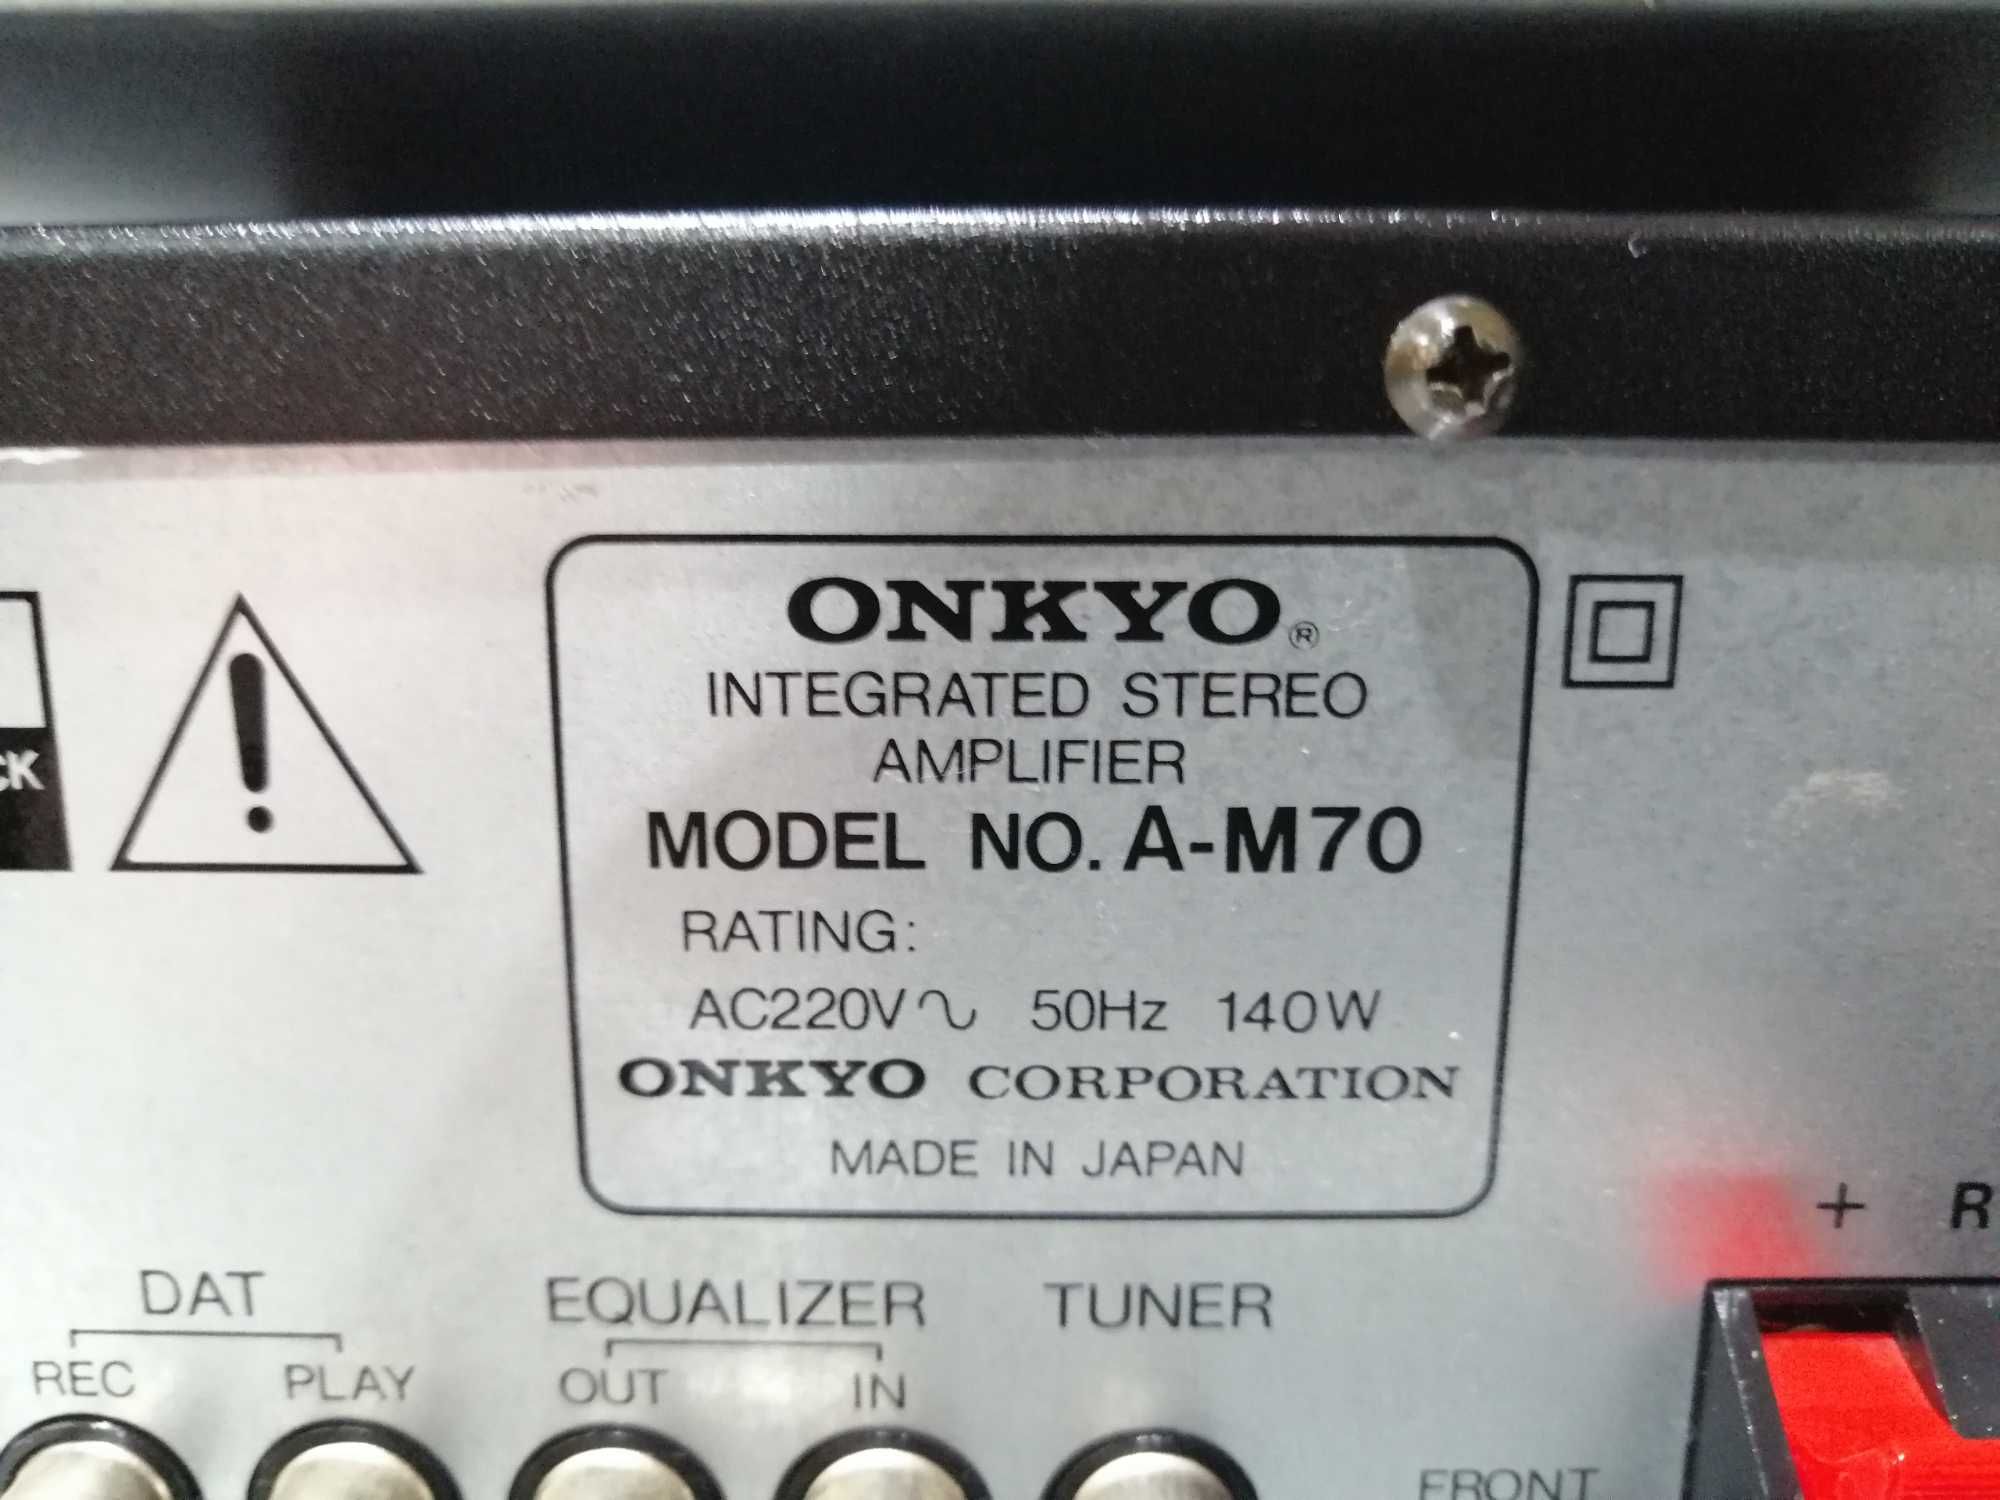 Wzmacniacz Onkyo A-M70 + Tuner Onkyo T-M70